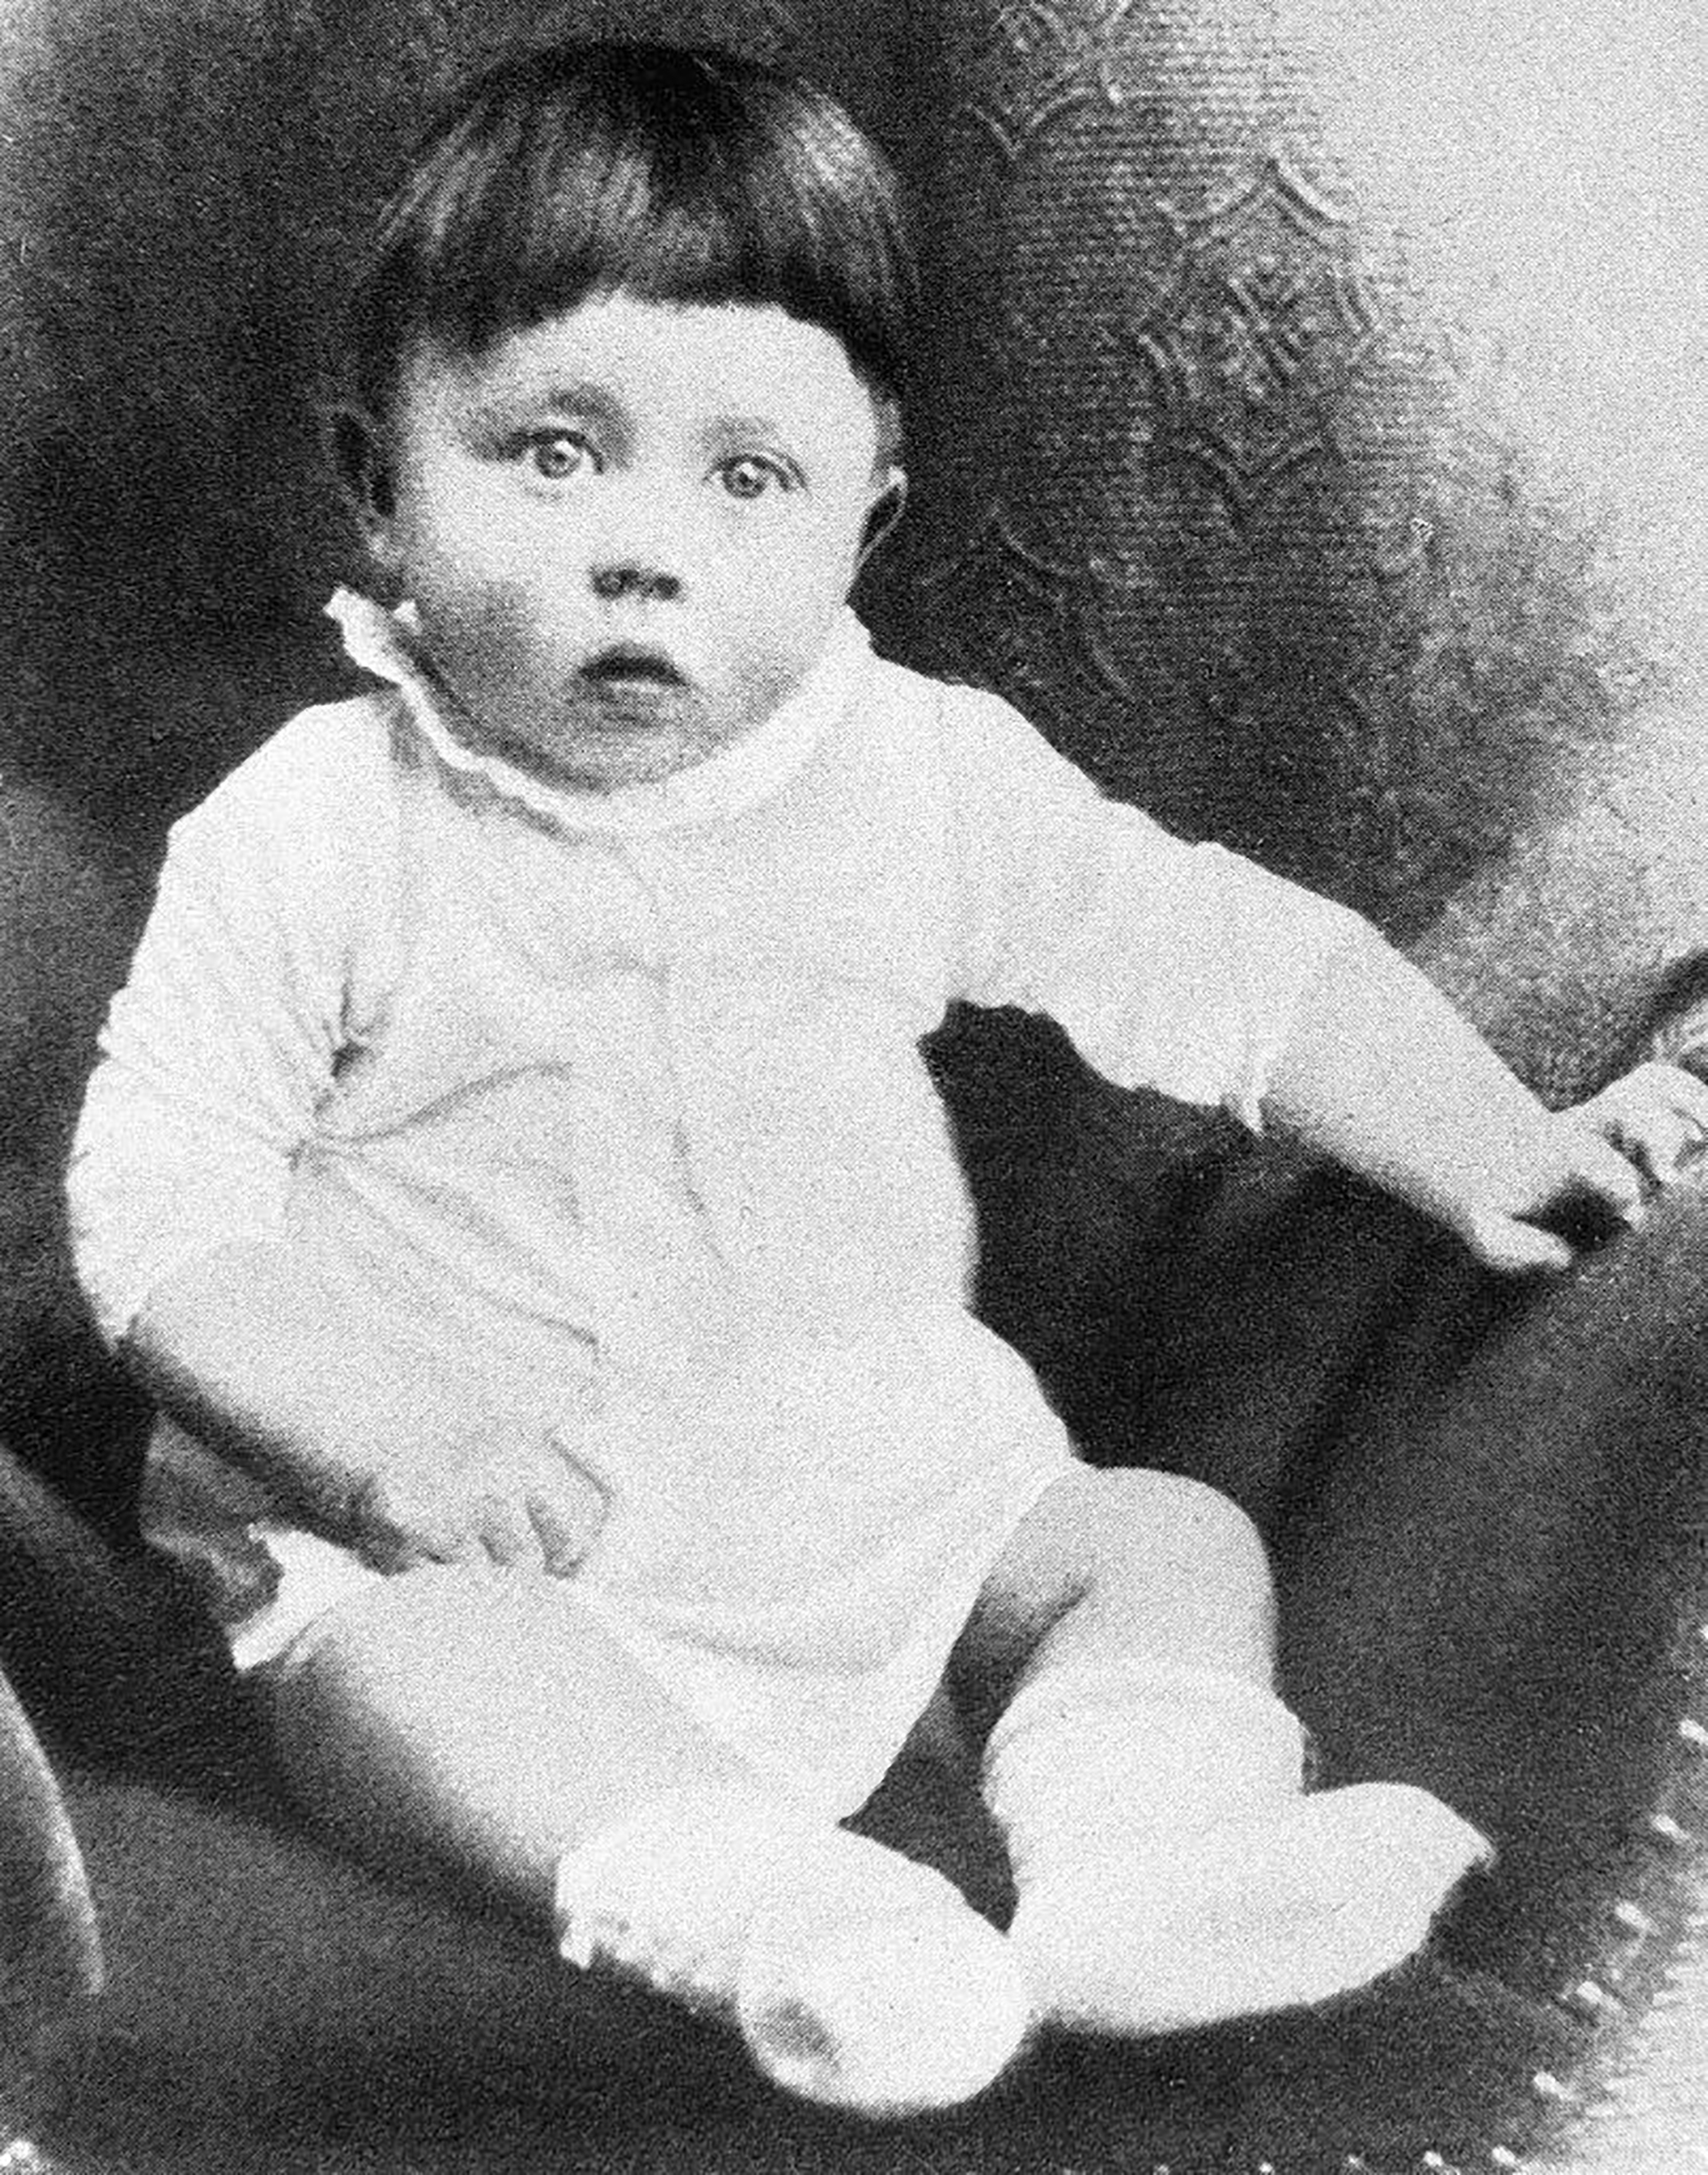 Un retrato de  Adolf Hitler de bebé. Nacido el 20 de abril de 1889 en el seno de una familia austríaca de clase media, el criminal nazi vivió una infancia desgraciada con un padre autoritario, alcohólico y violento (Bettmann Archive)